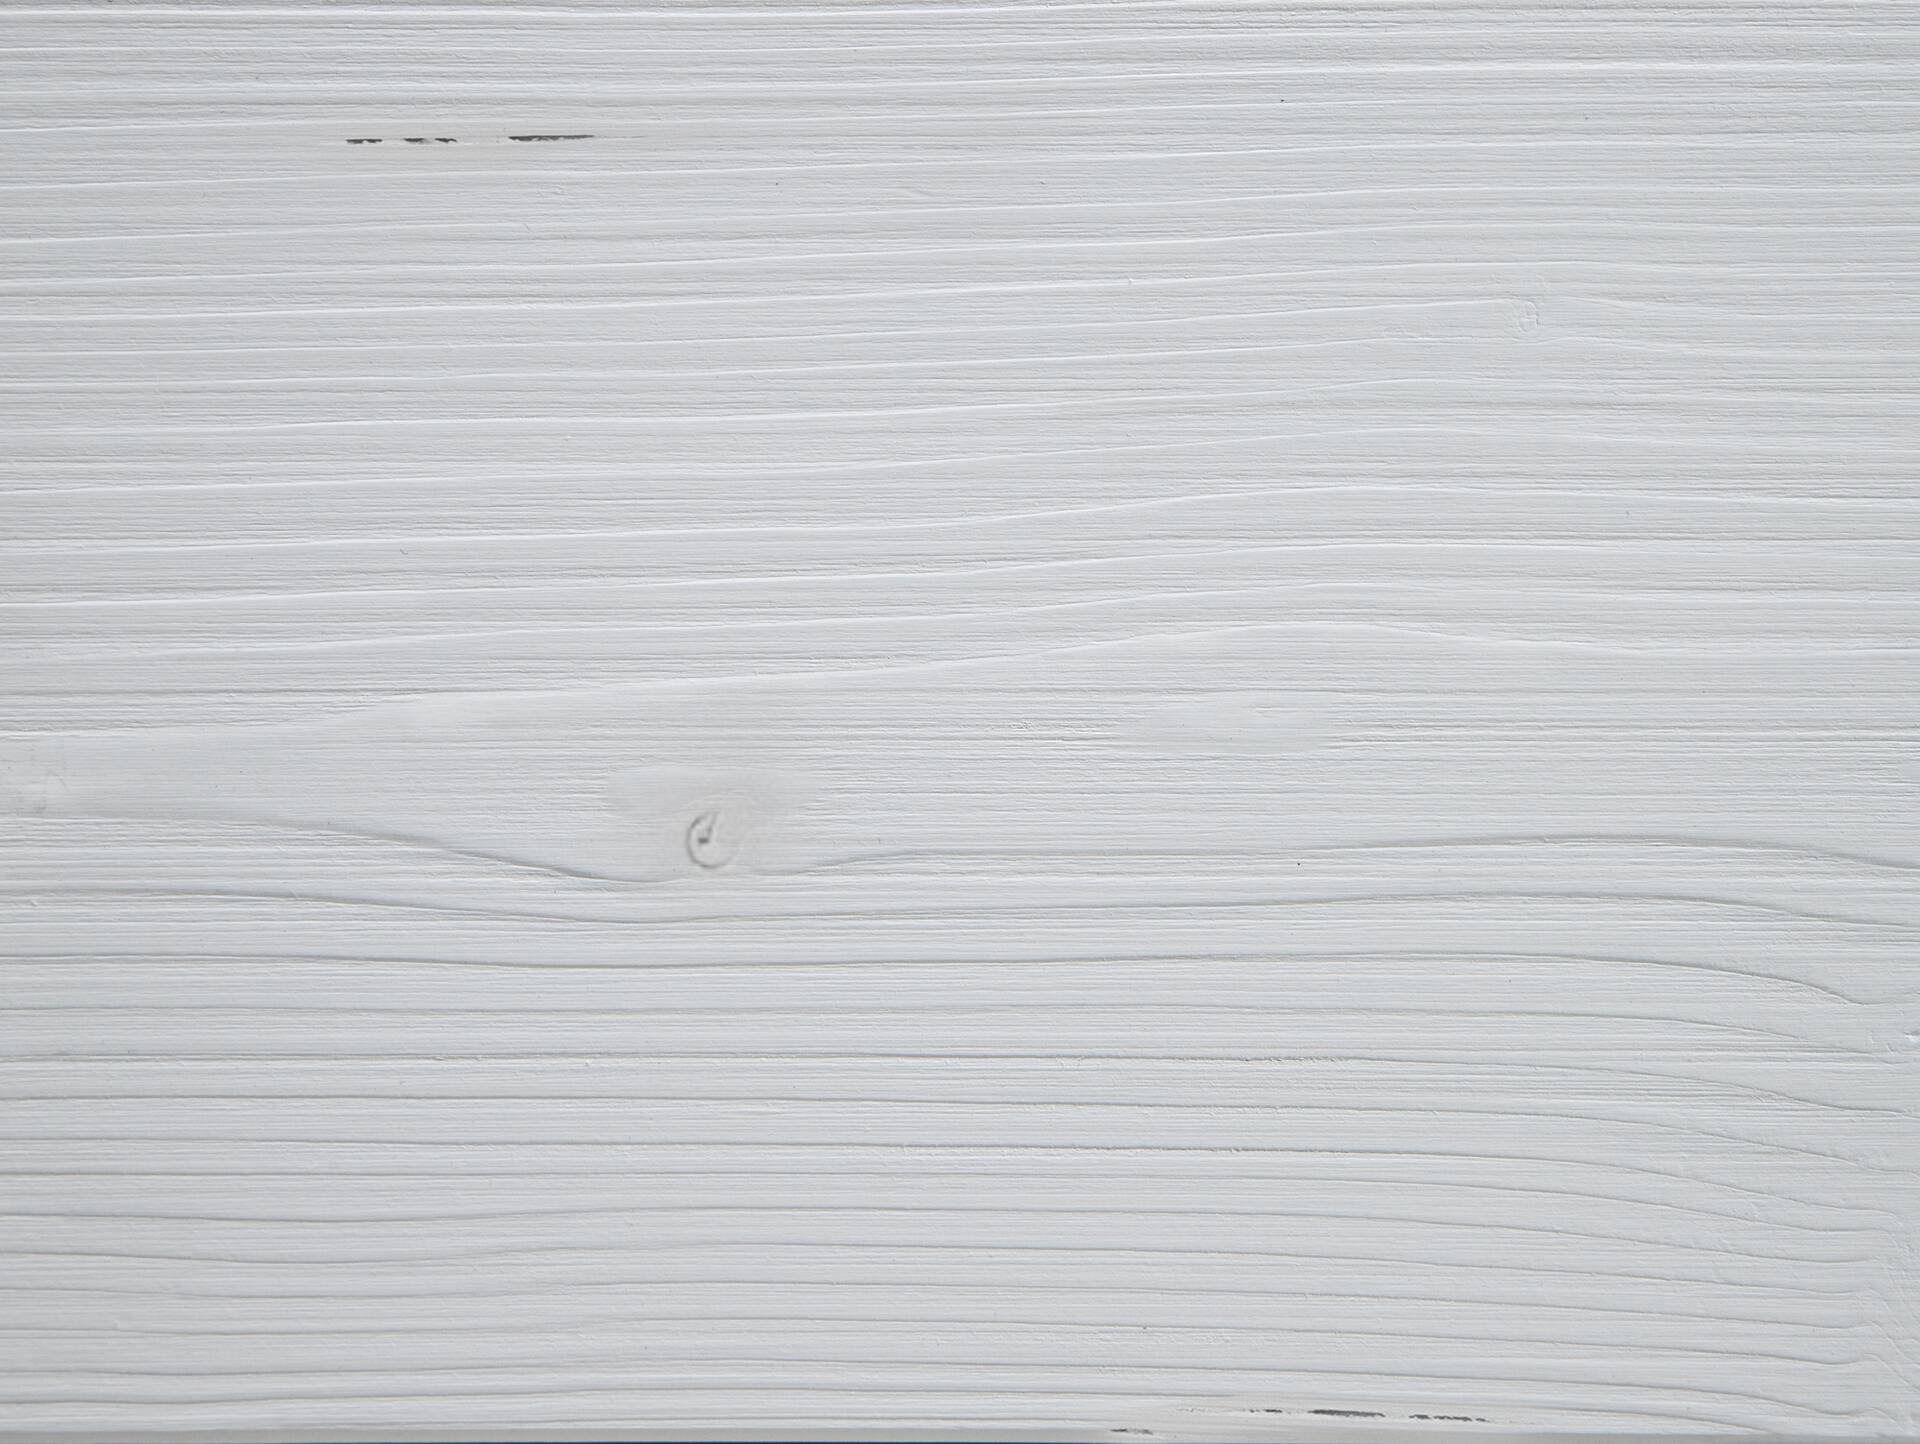 LUKY Kufenbett mit Polsterkopfteil, Material Massivholz, Fichte massiv, Kufen schwarz 180 x 200 cm | weiss | Kunstleder Braun